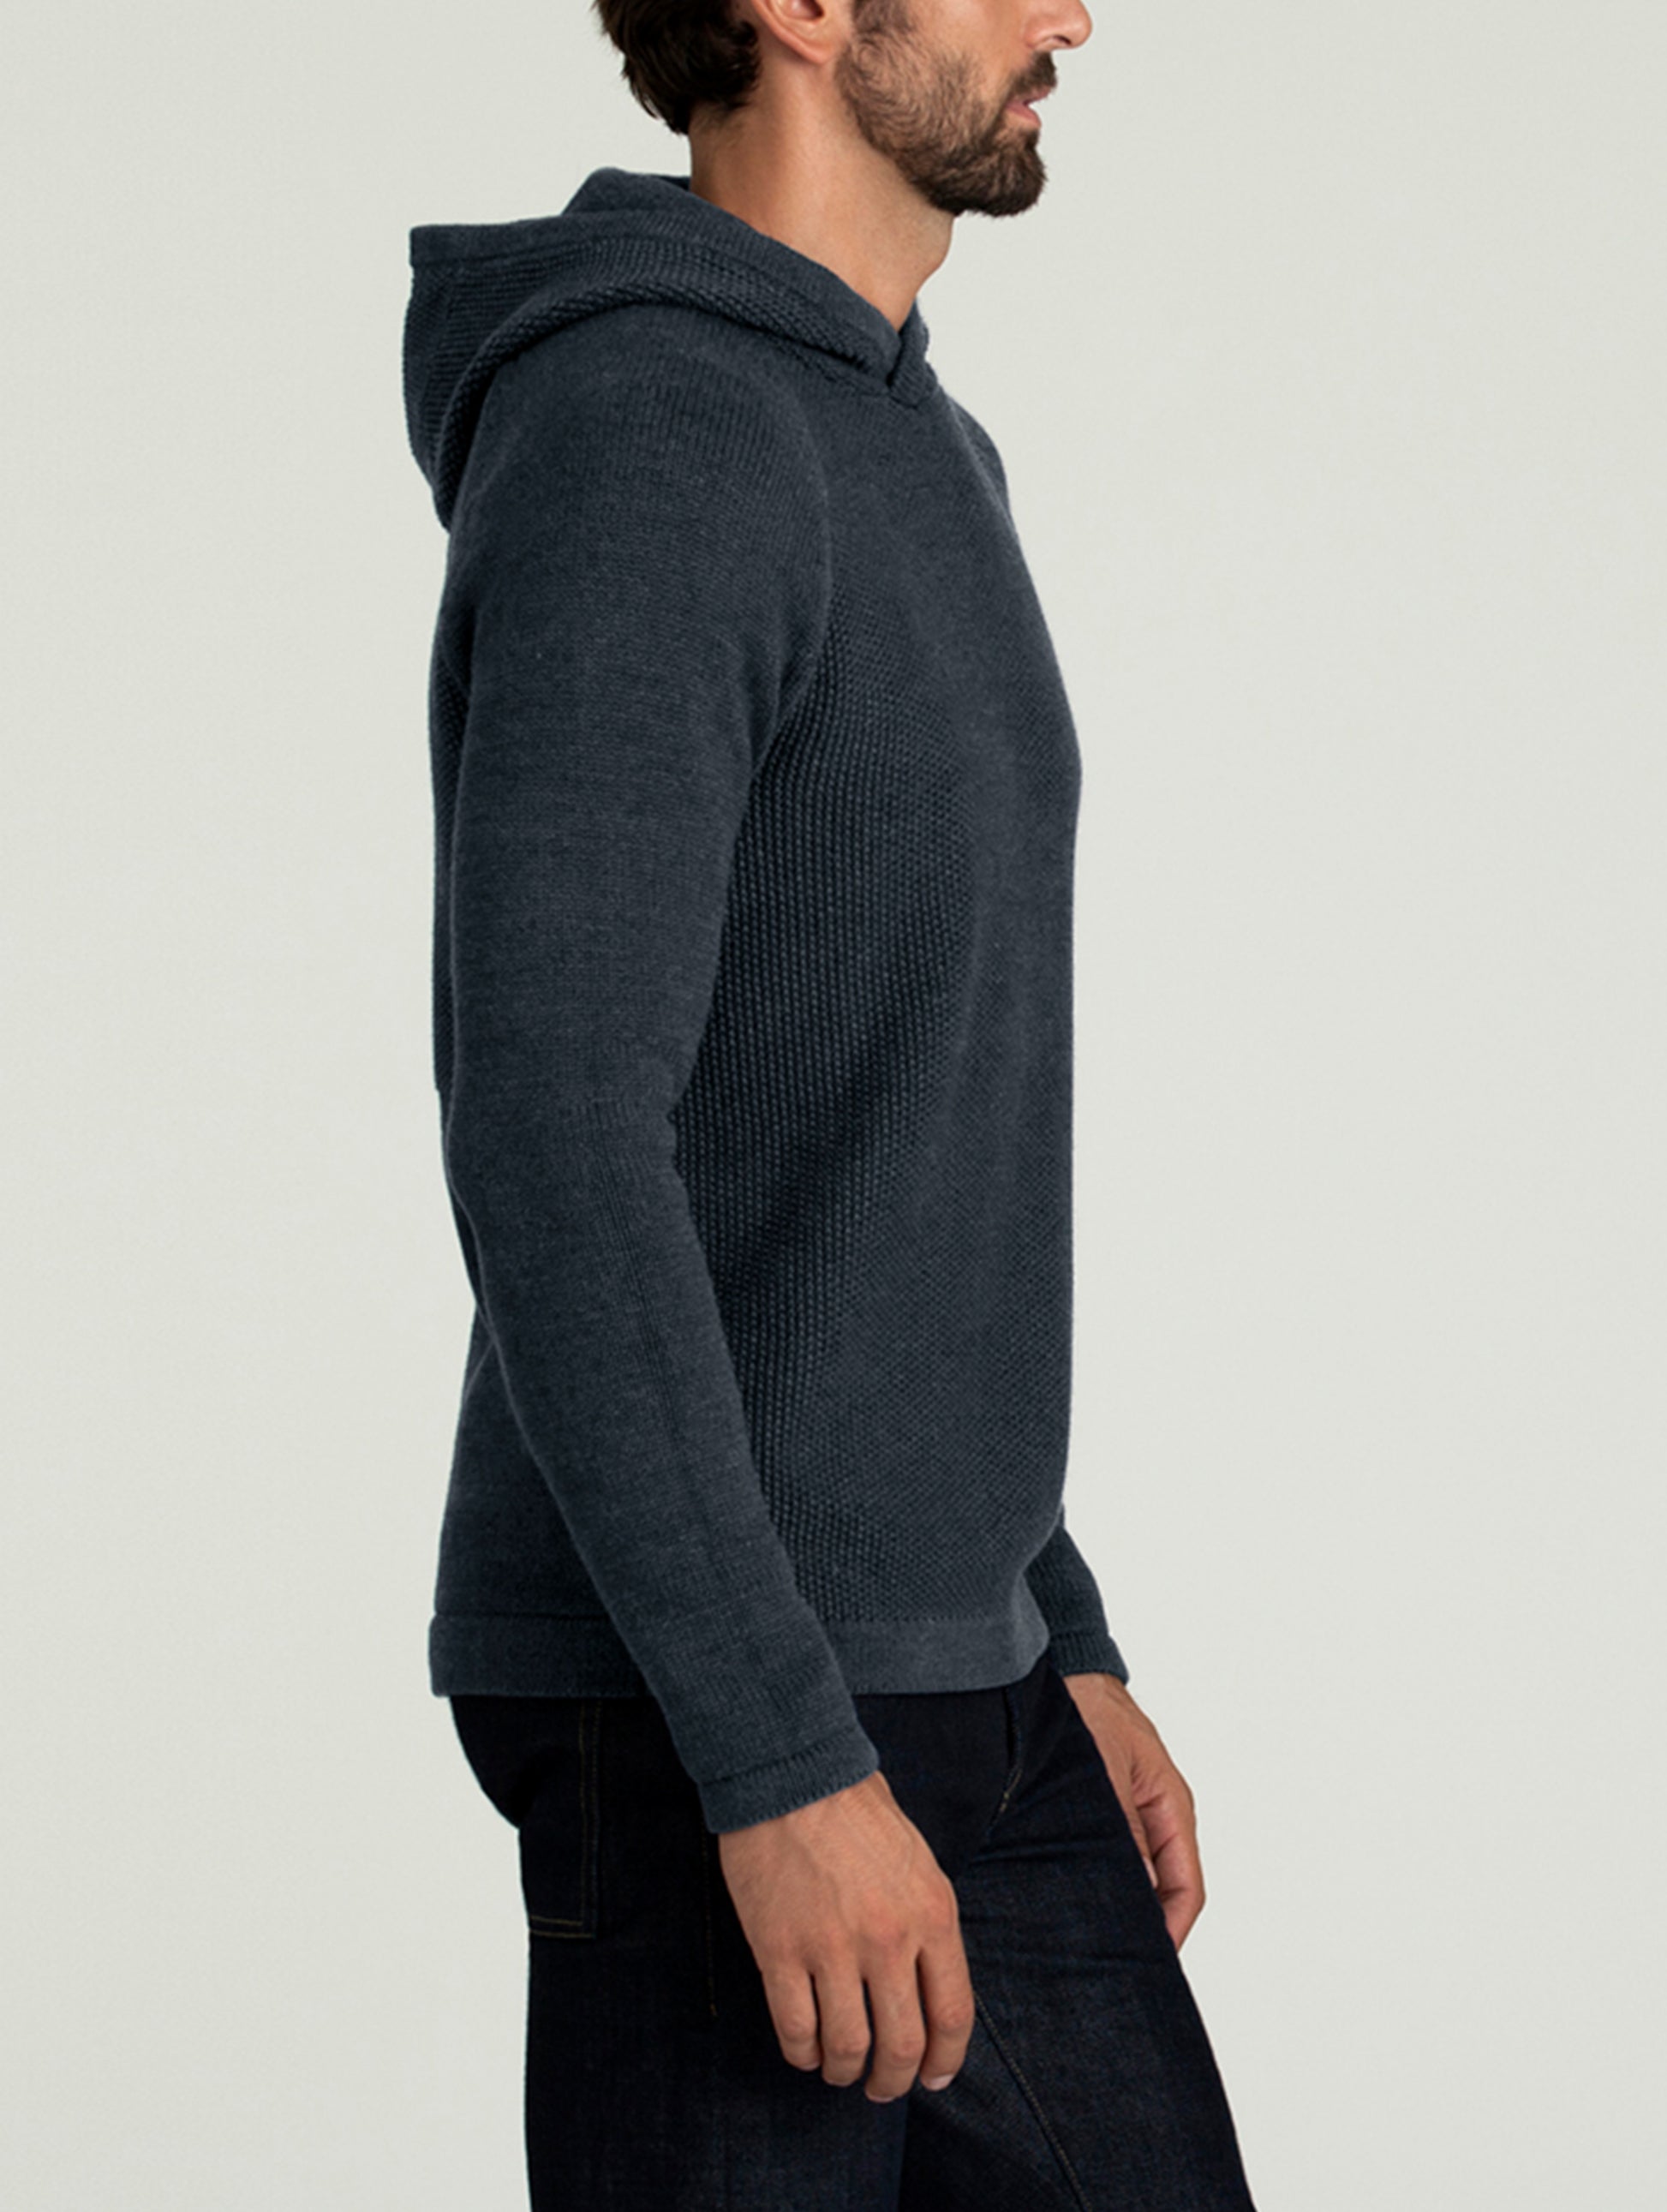 dark blue hooded sweater for men